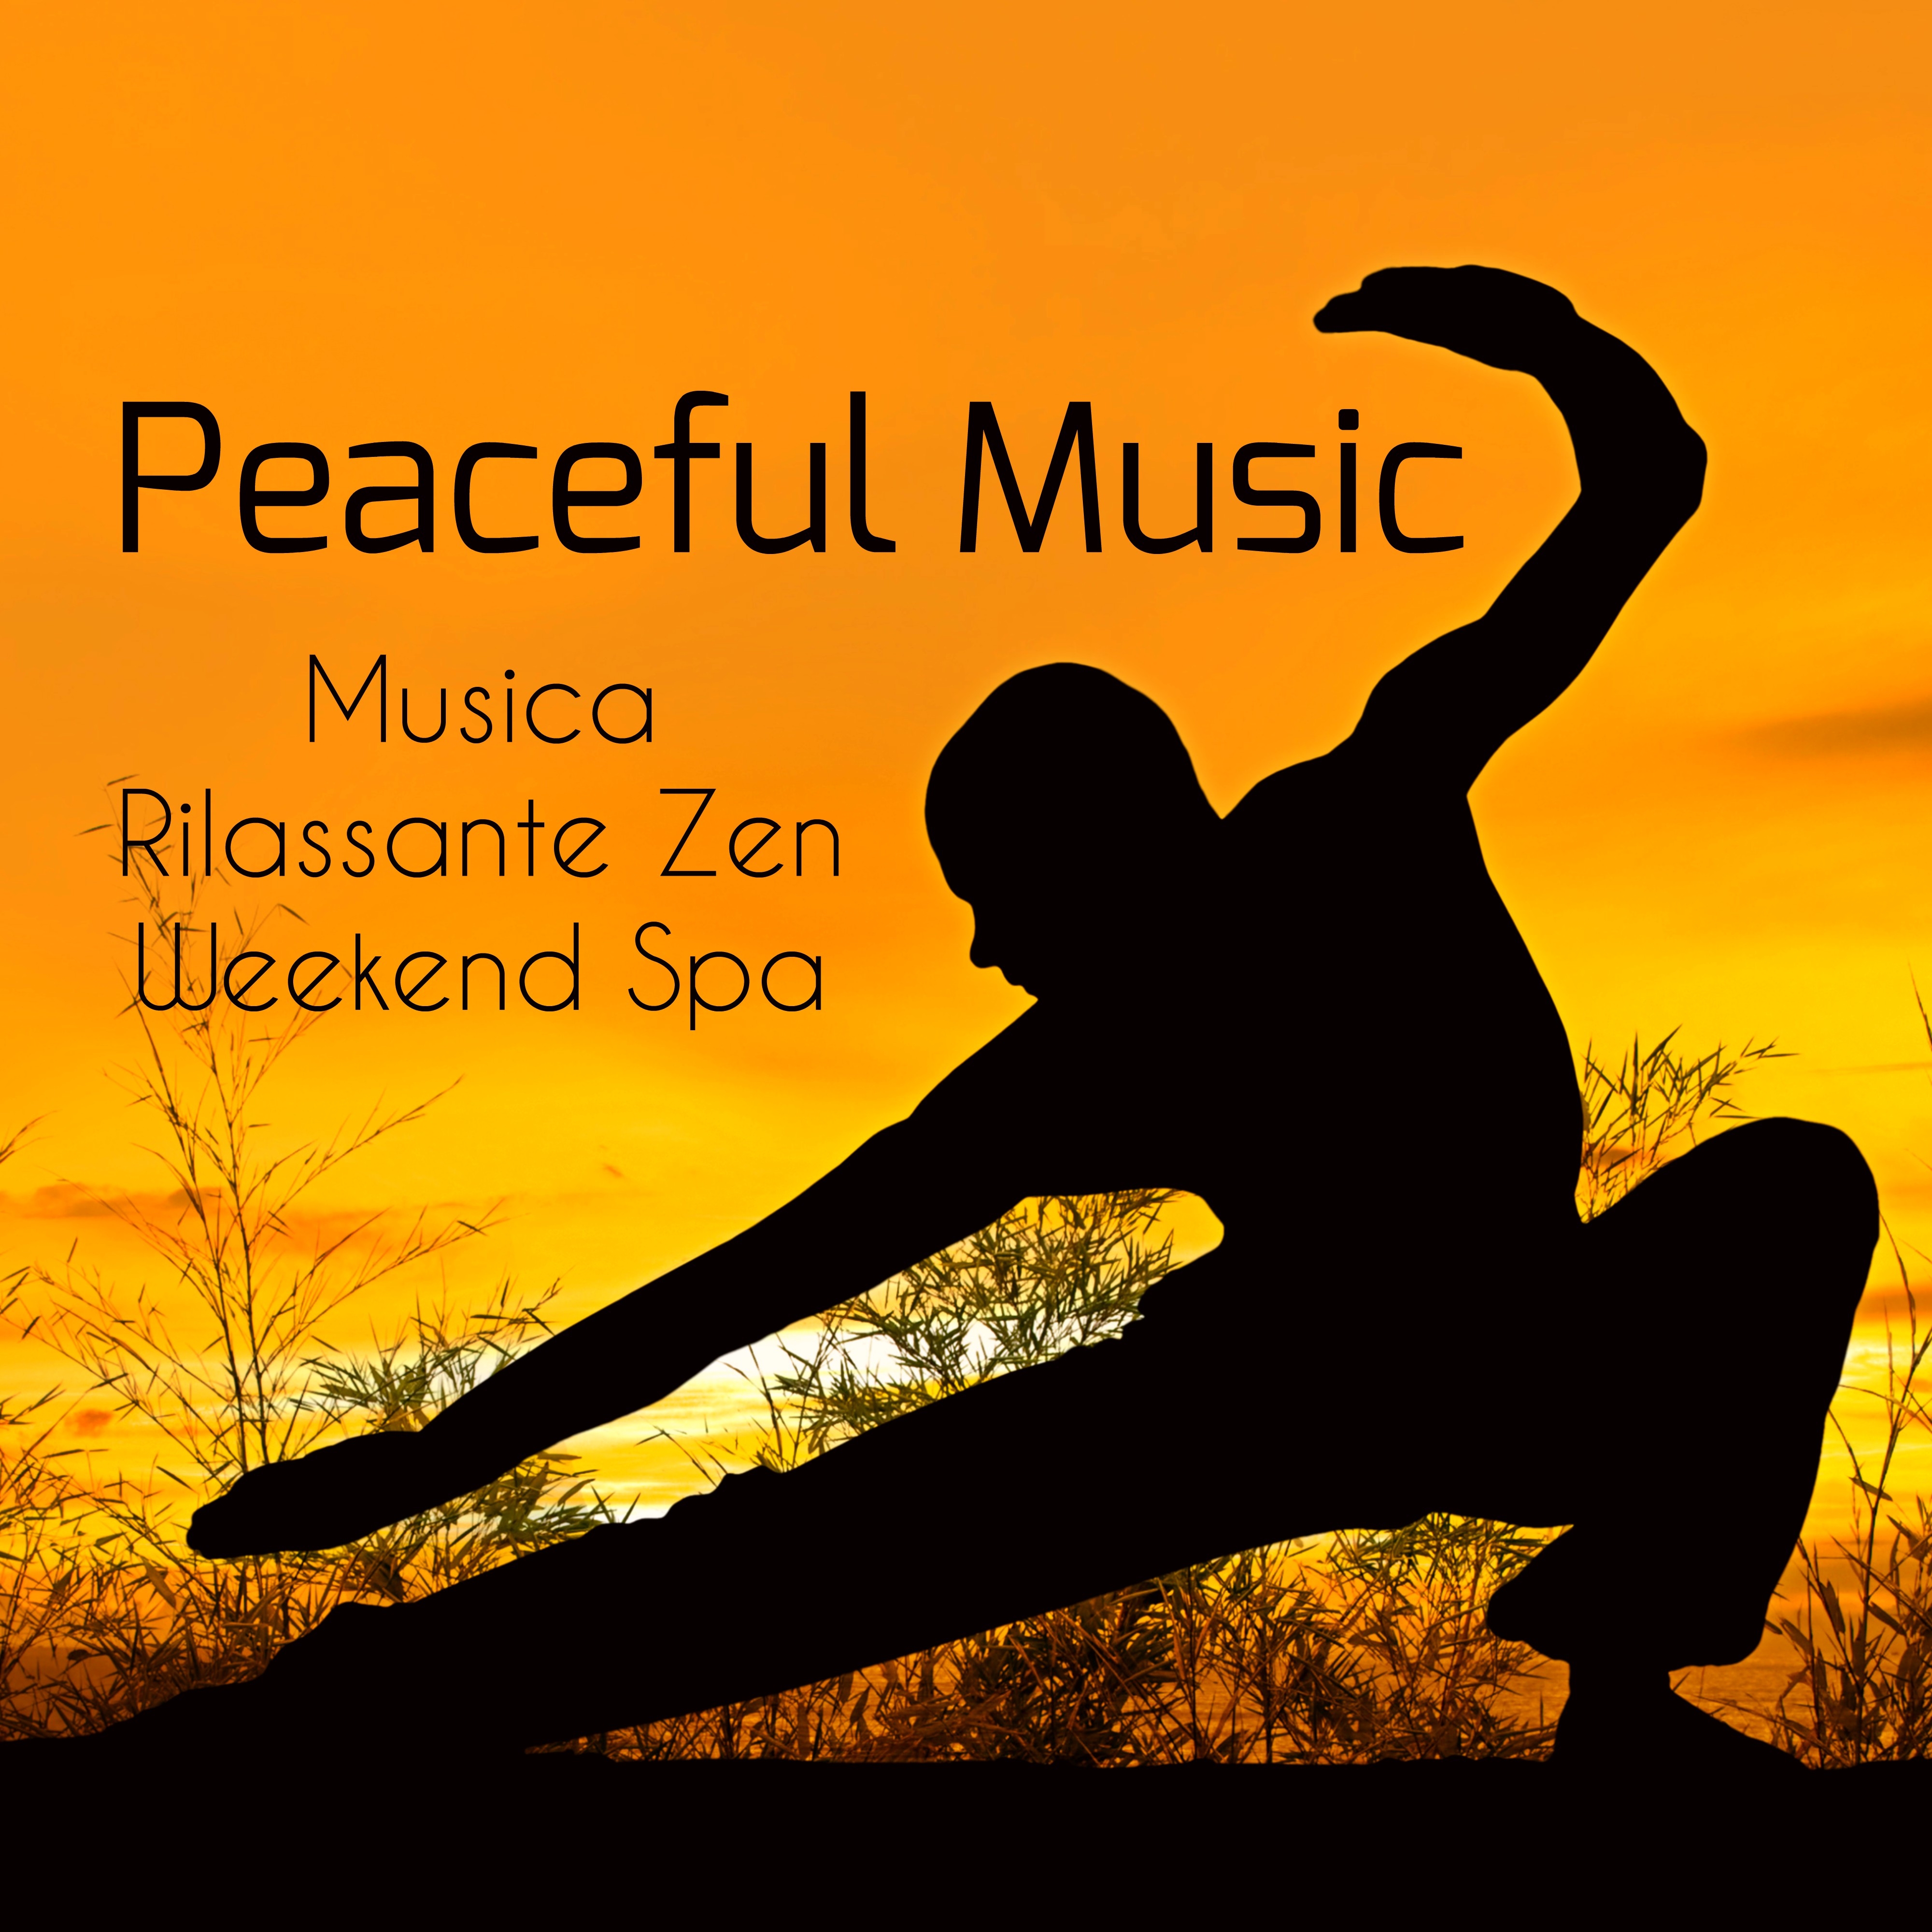 Peaceful Music - Musica Rilassante Zen Garden Weekend Spa con Suoni dalla Natura Strumentali per Salute e Benessere